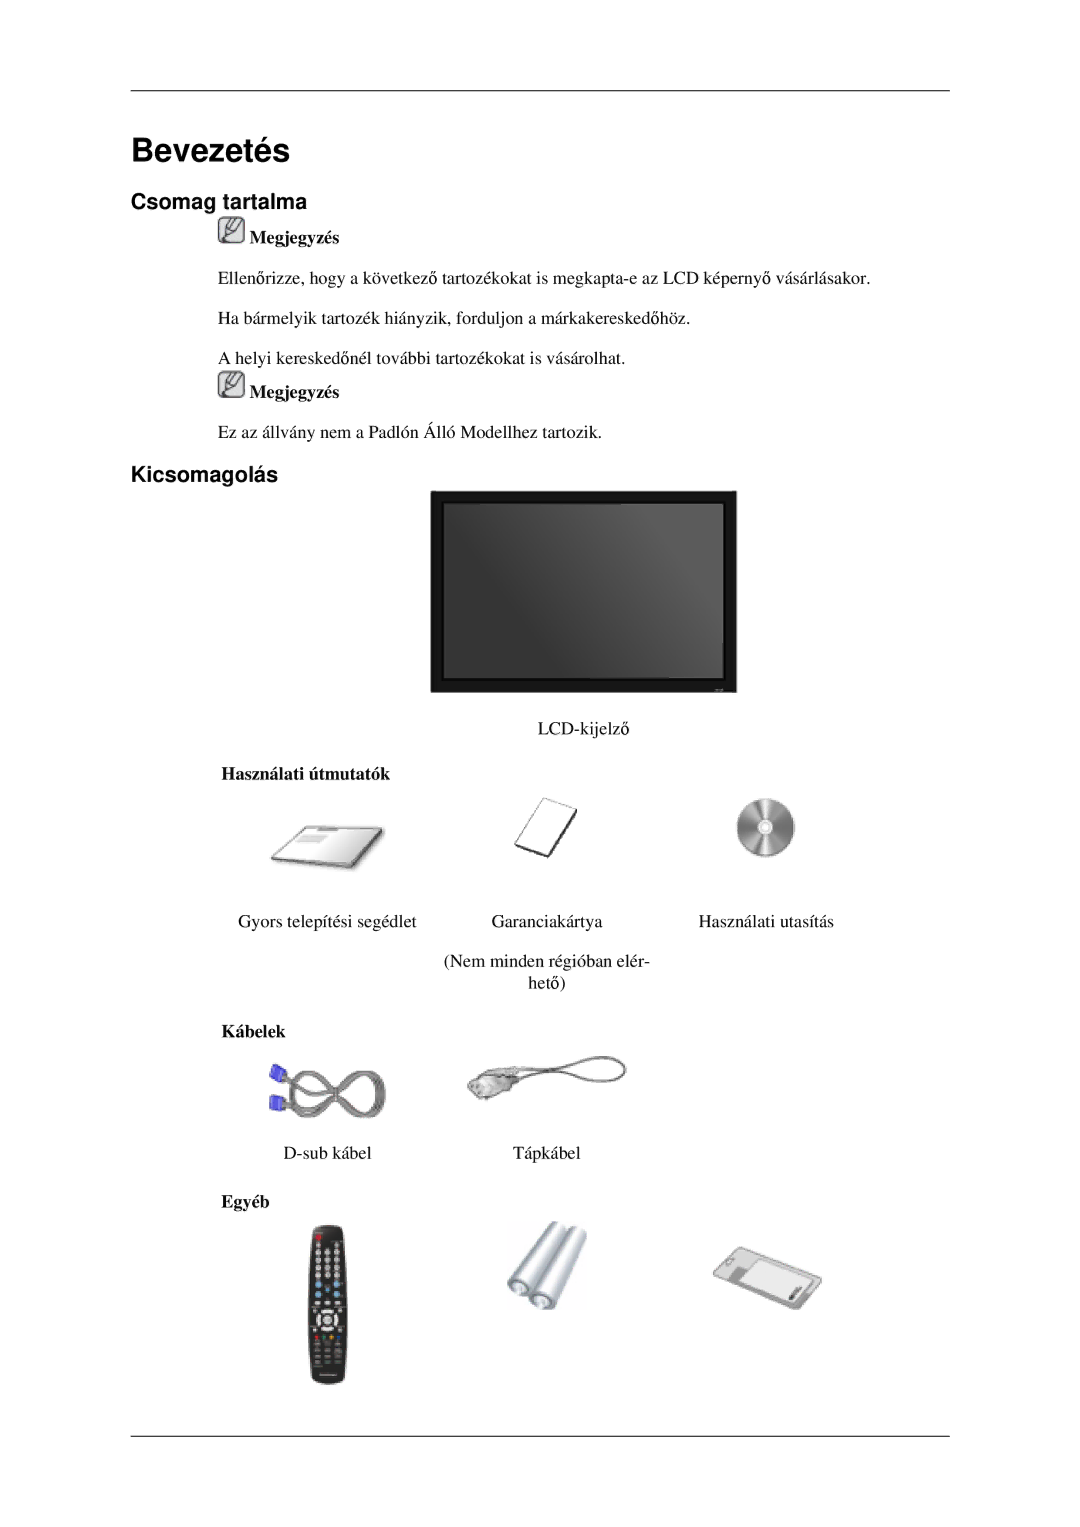 Samsung LH46MGPLGD/EN manual Csomag tartalma, Kicsomagolás, Használati útmutatók, Kábelek, Egyéb 